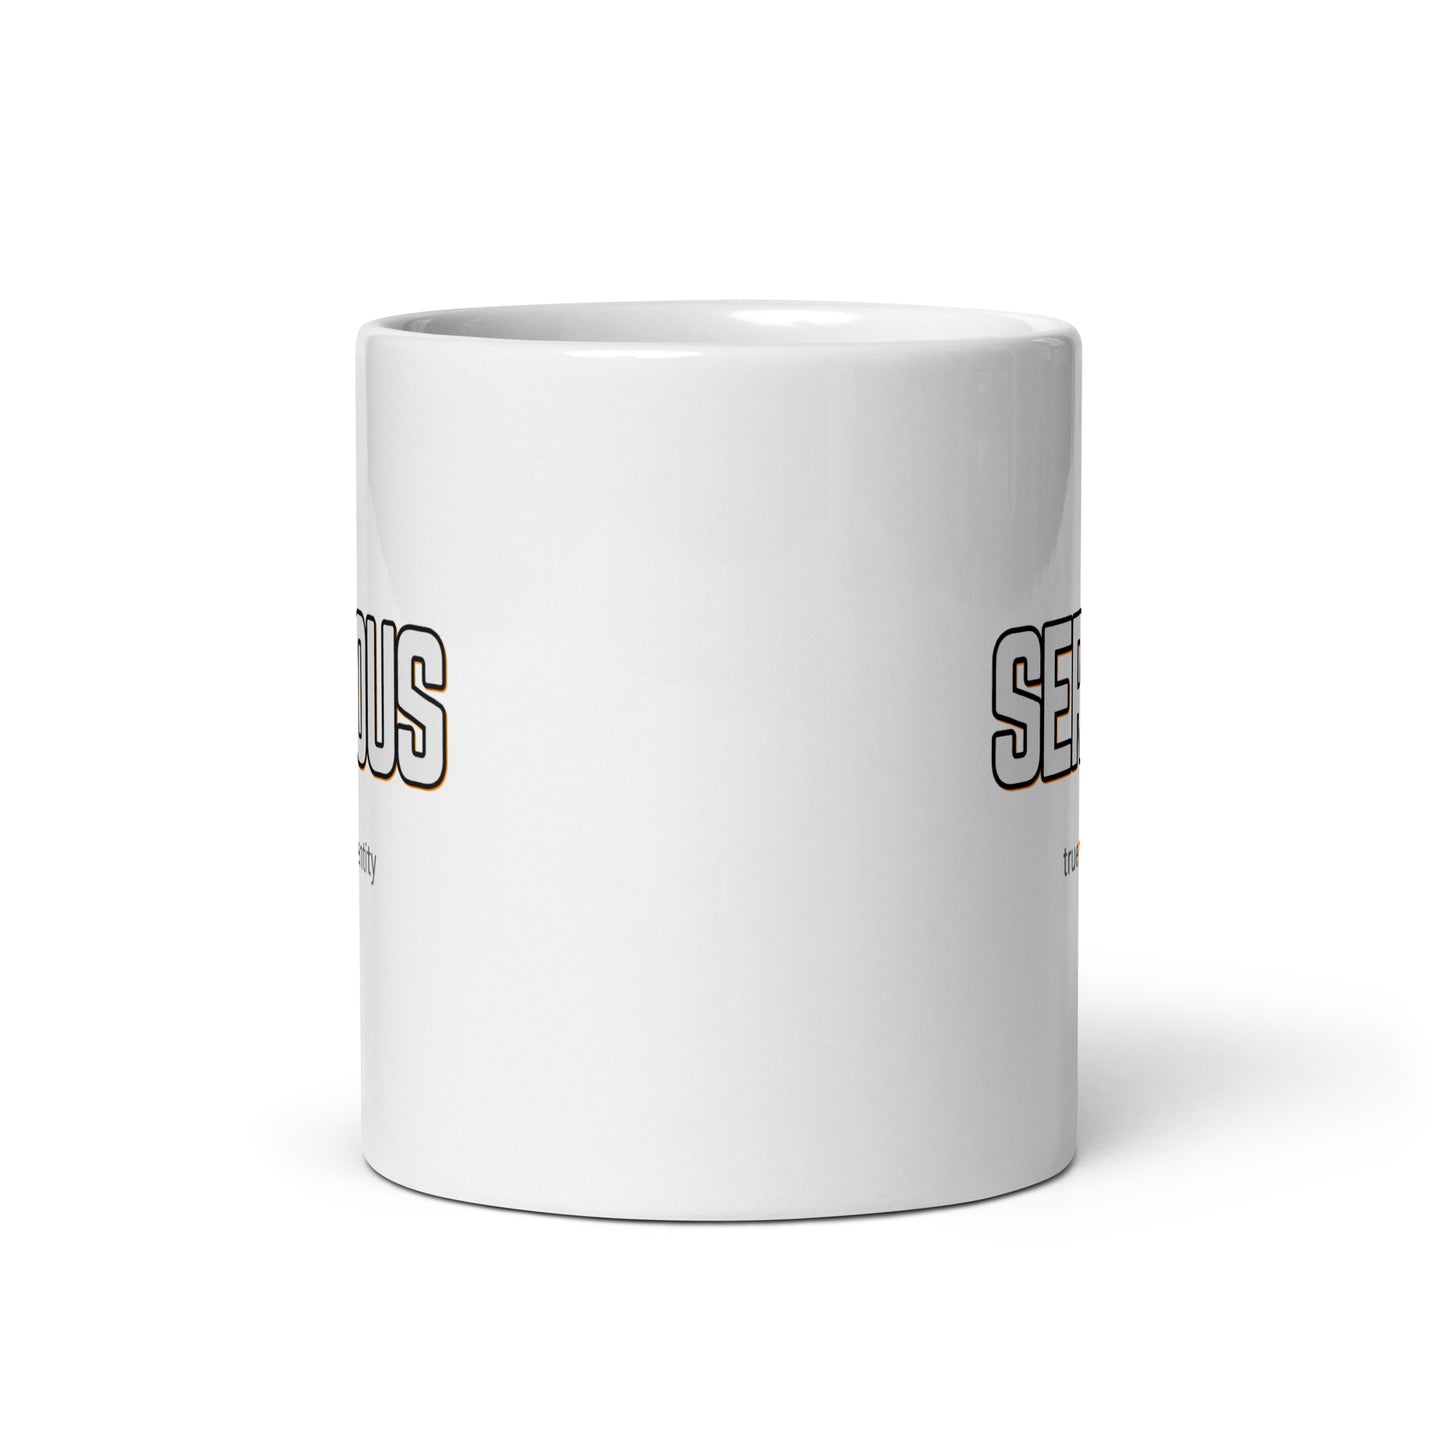 SERIOUS White Coffee Mug Bold 11 oz or 15 oz